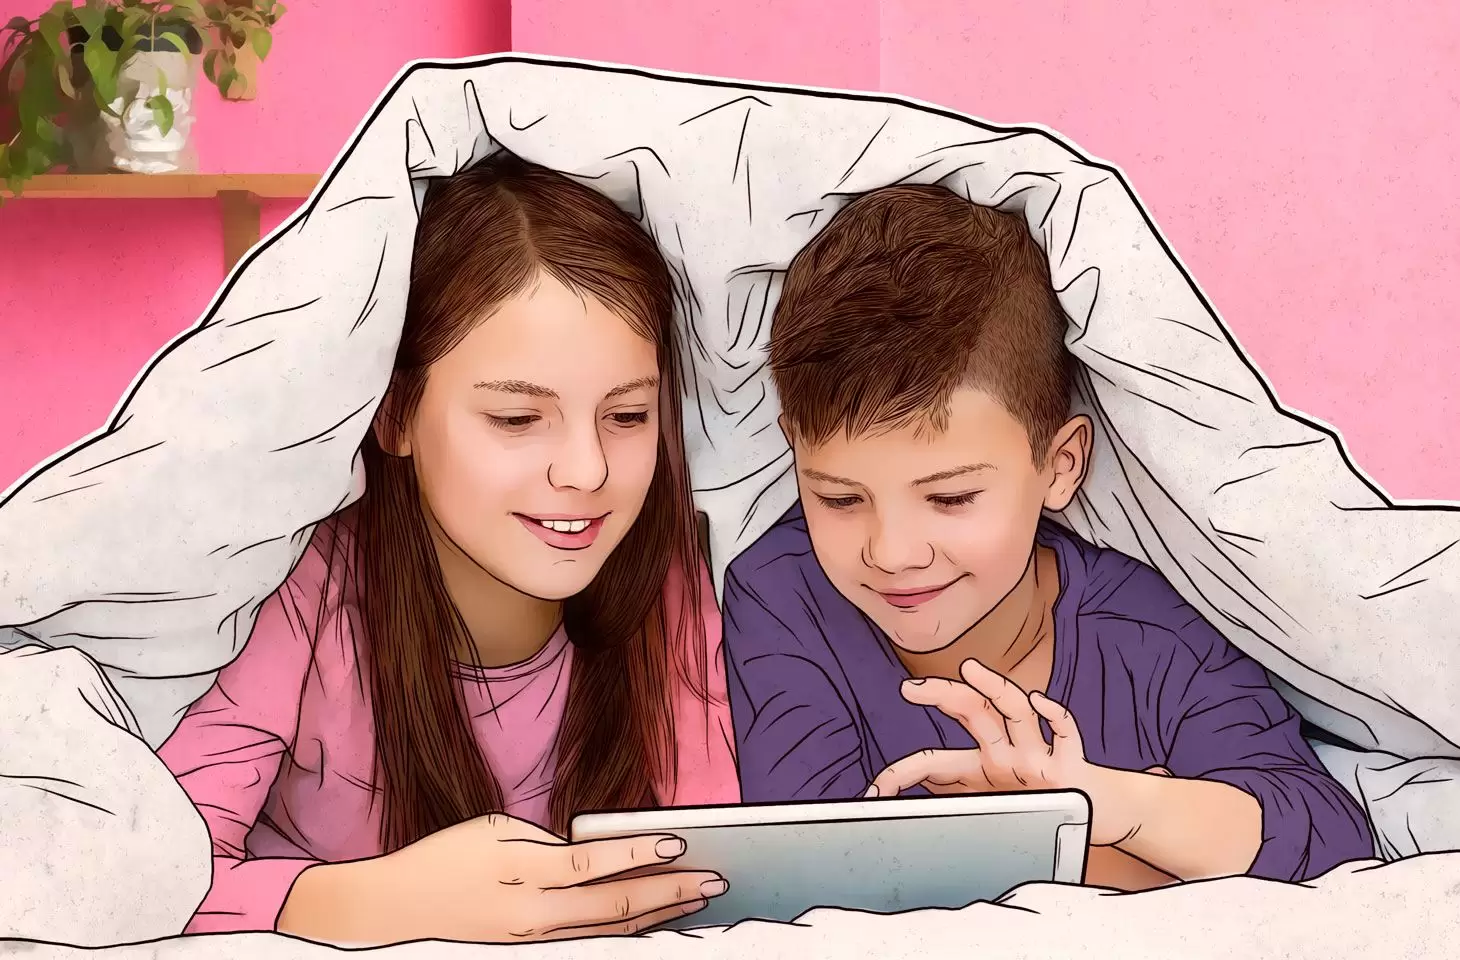 Kaspersky, Çocukların Dijital Tercihlerini Araştırdı